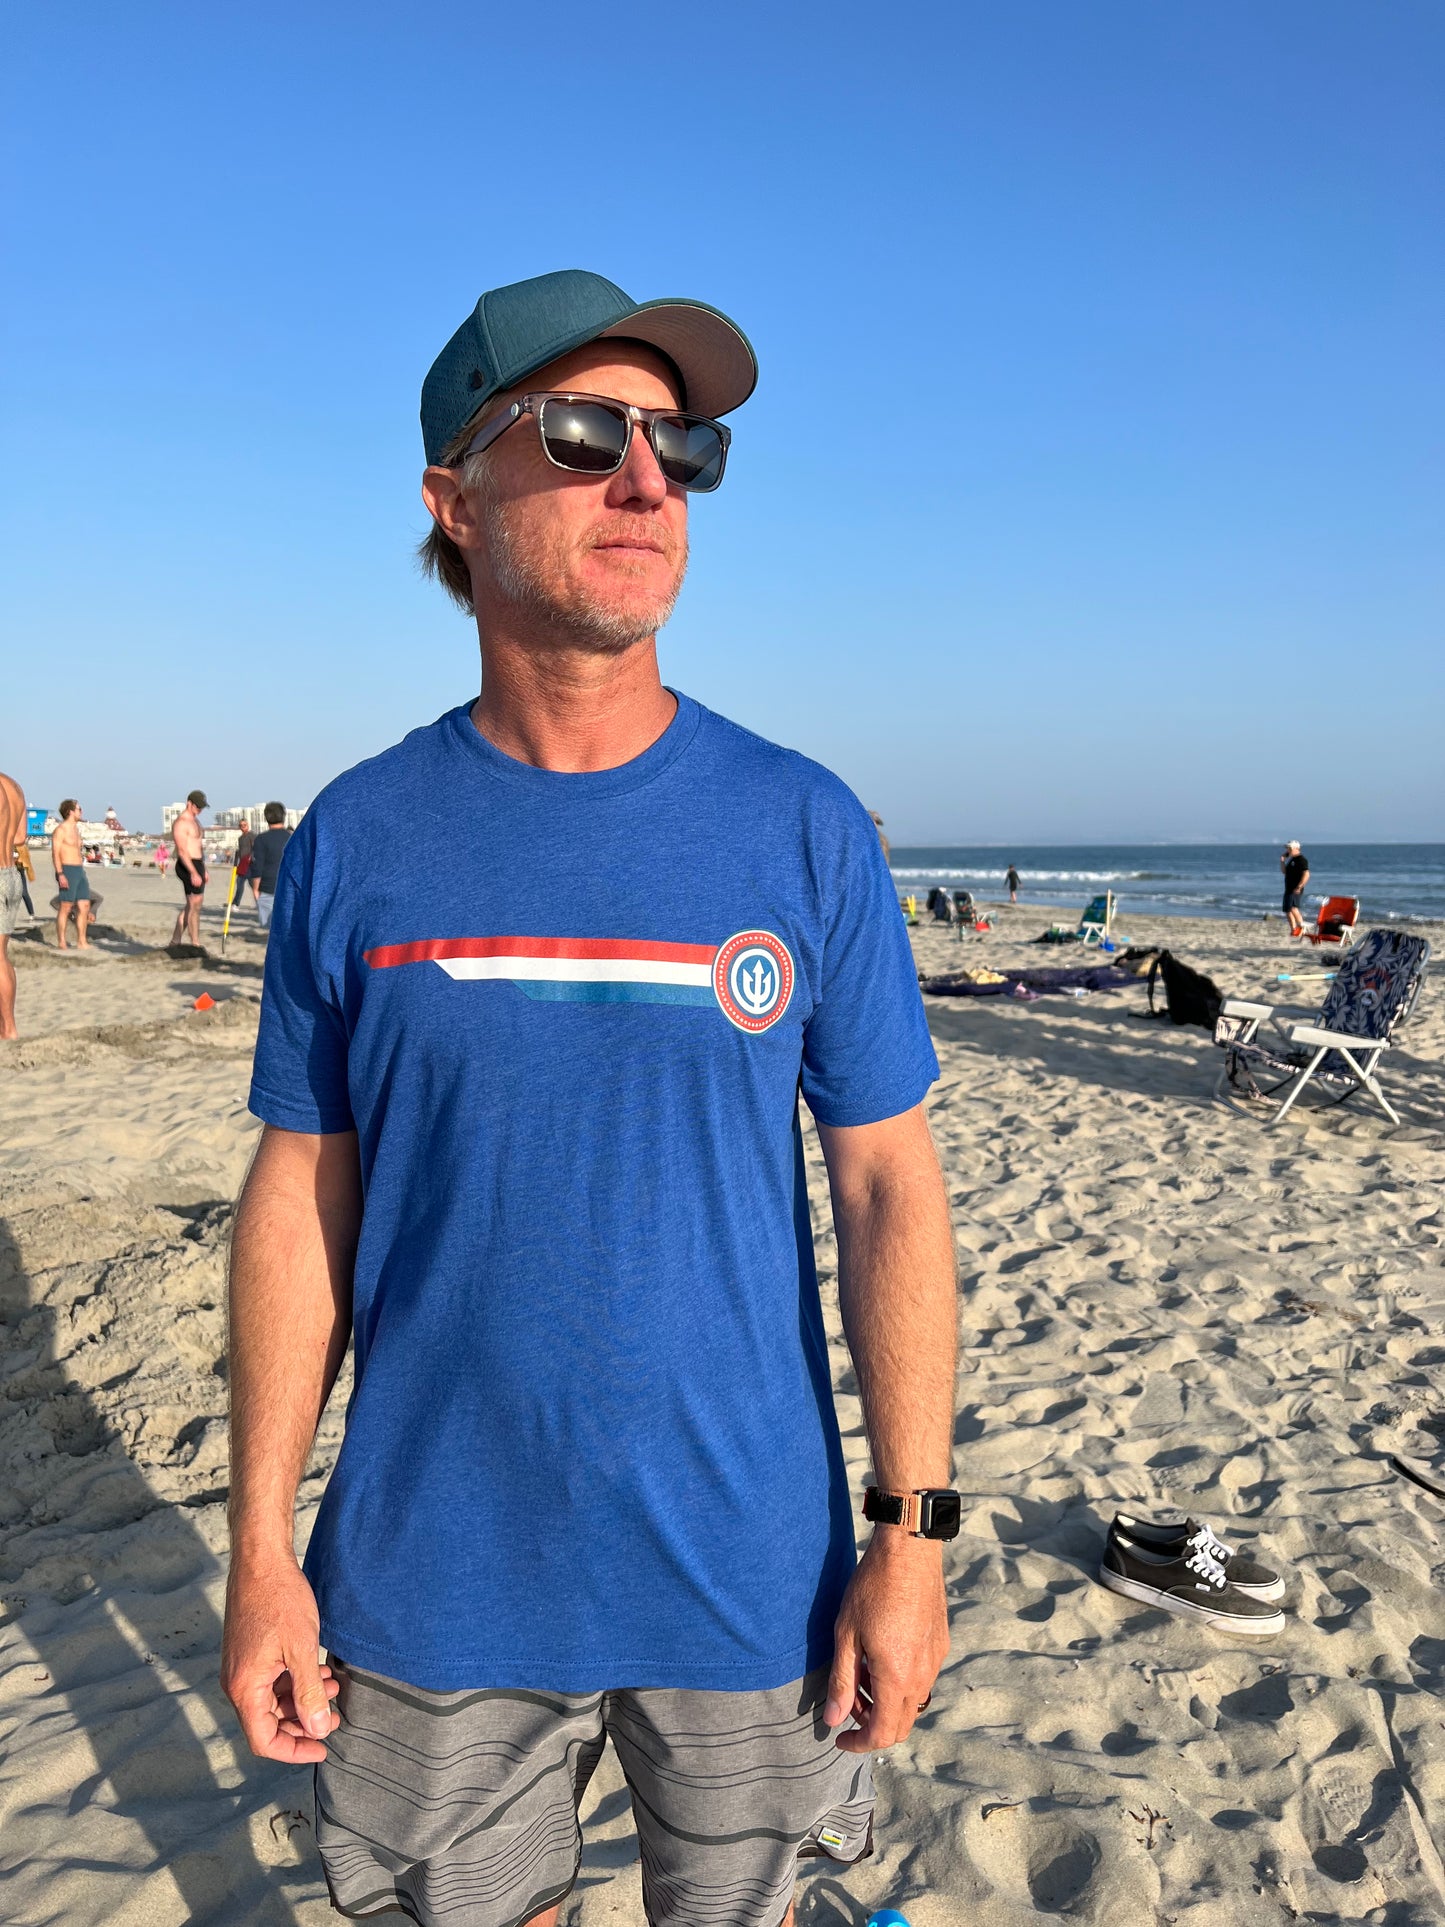 The Cap’n Patriotic t-shirt